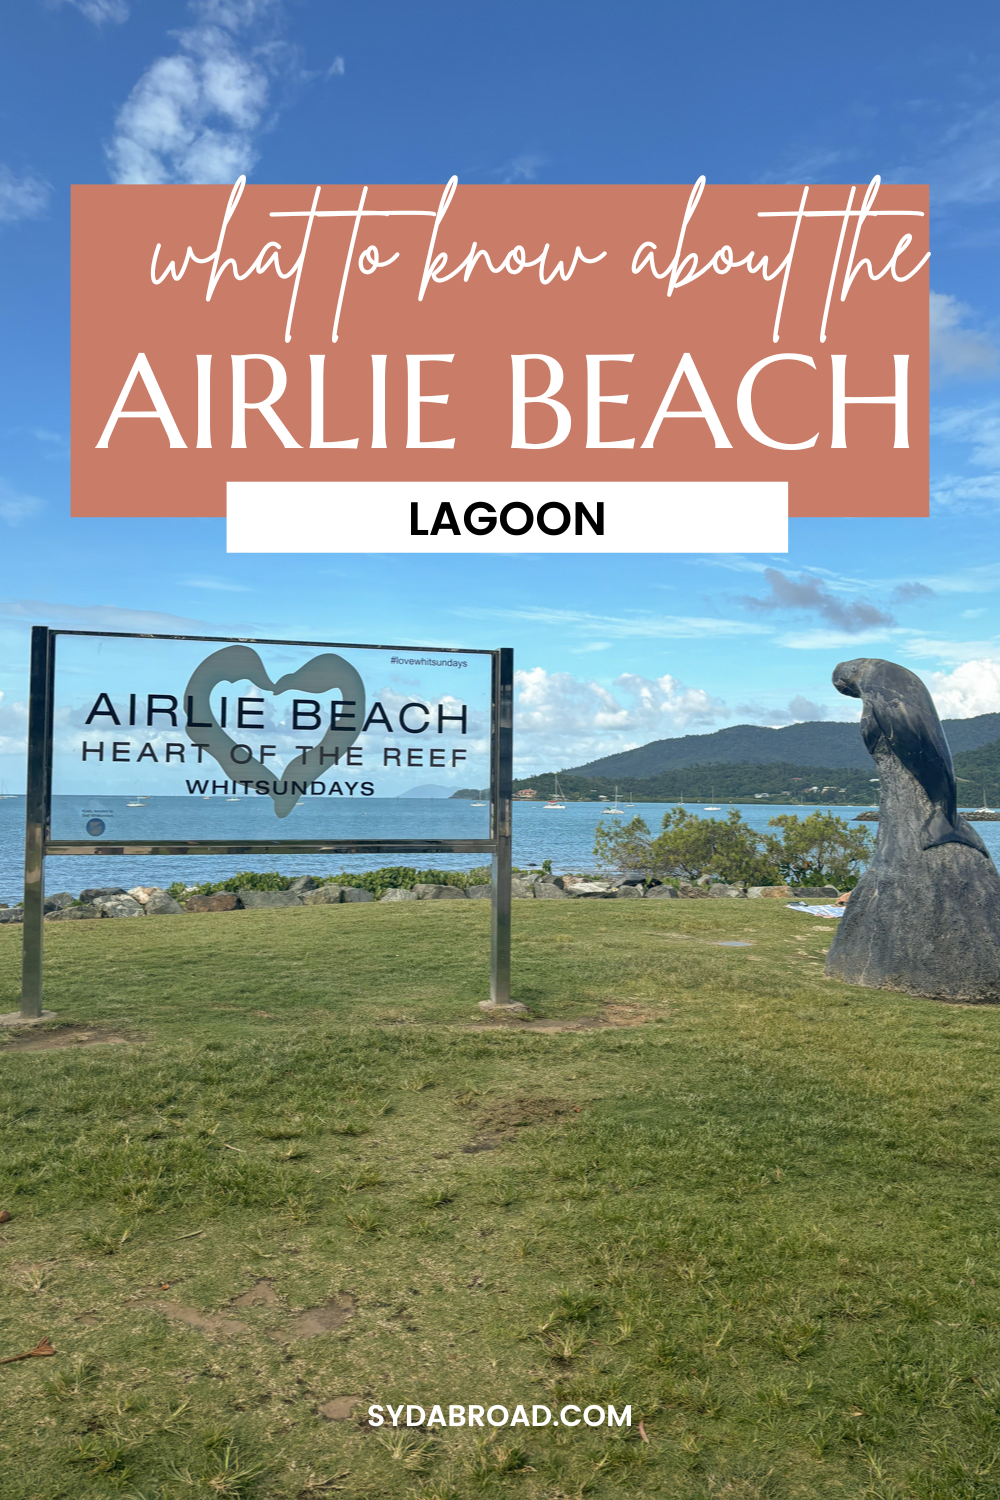 Airlie beach lagoon